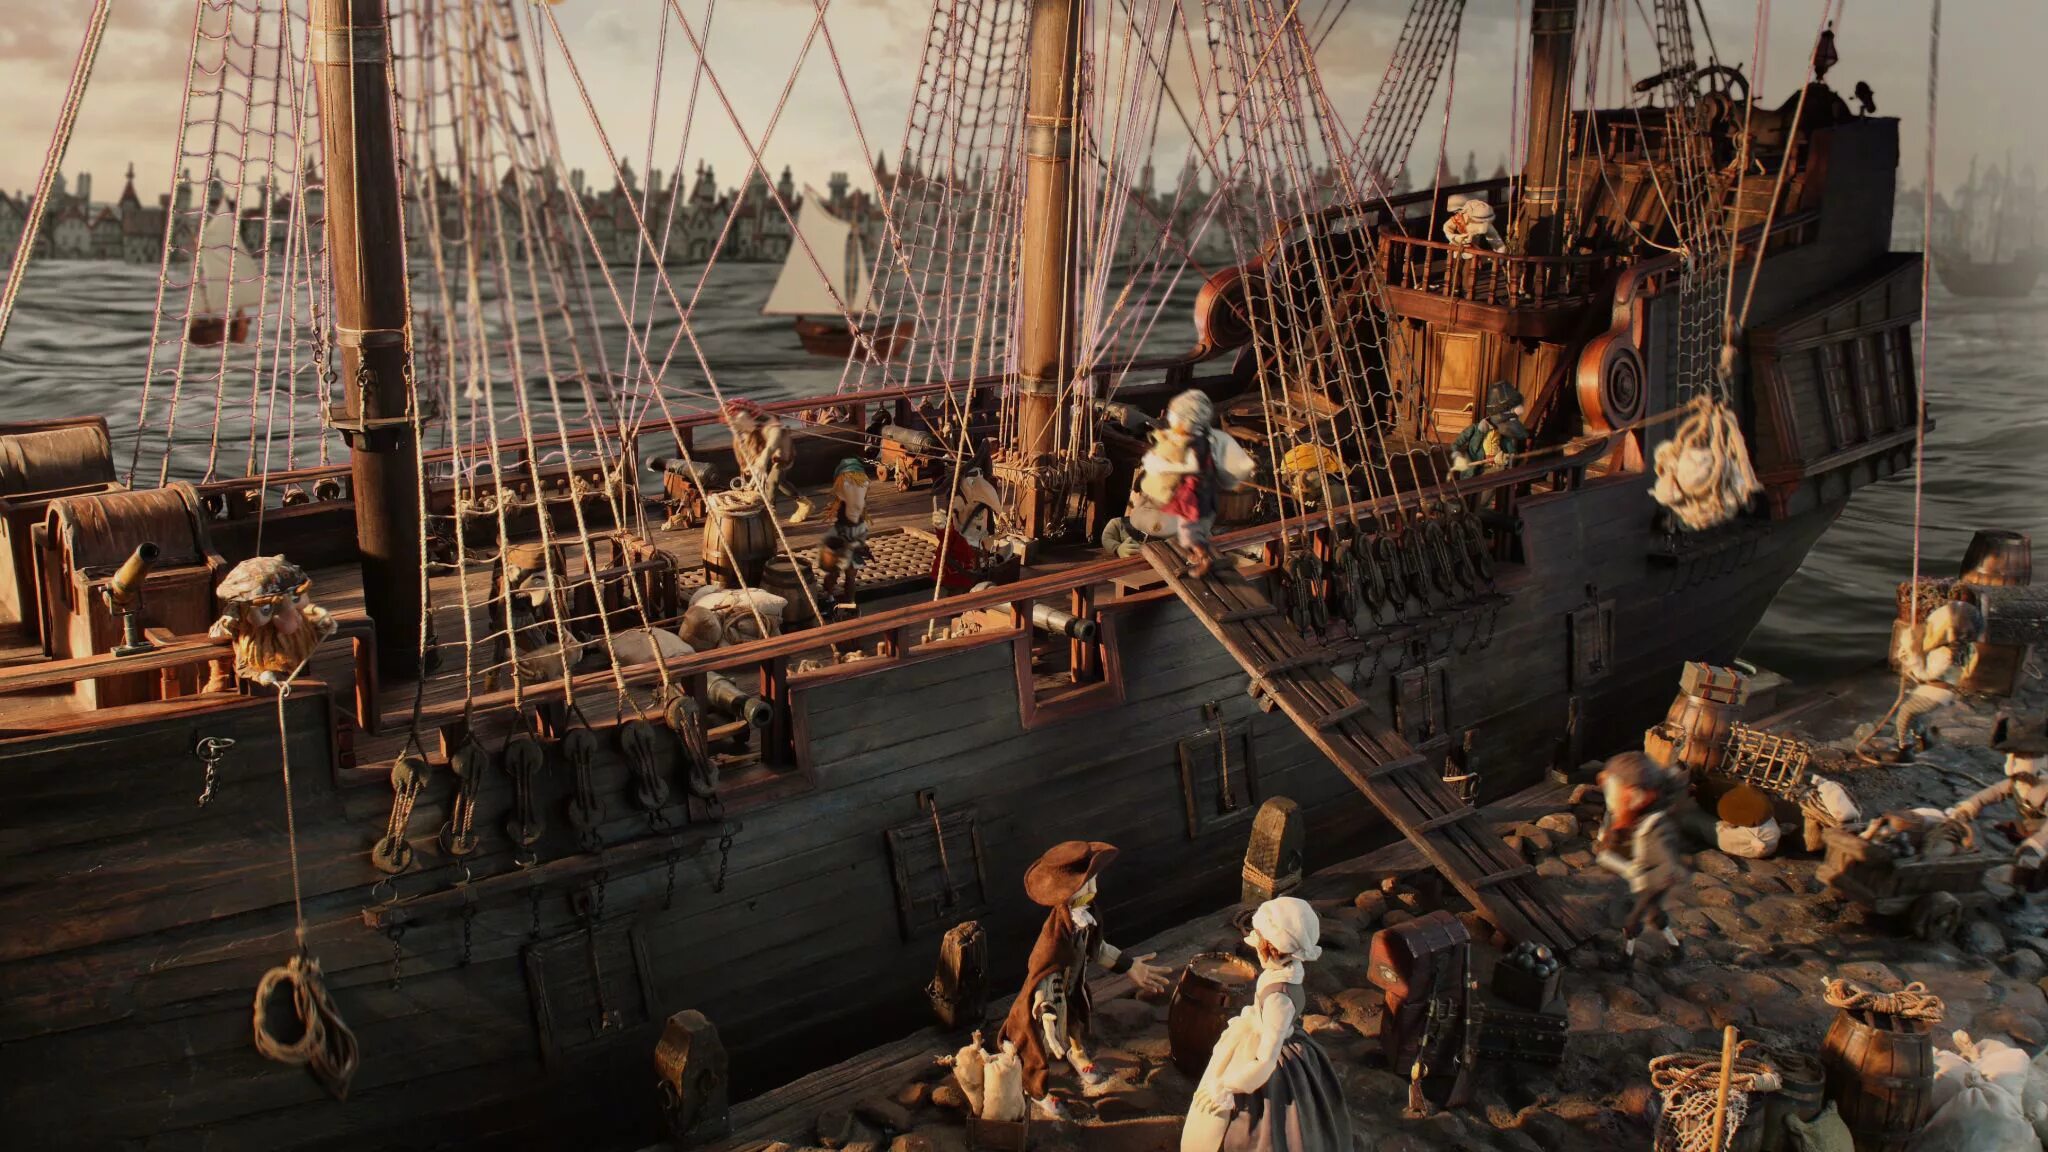 Какая находка на корабле оказалась для робинзона. Робинзон Крузо и пираты. Робинзон Крузо на корабле с пиратами. Пират Робинзон.